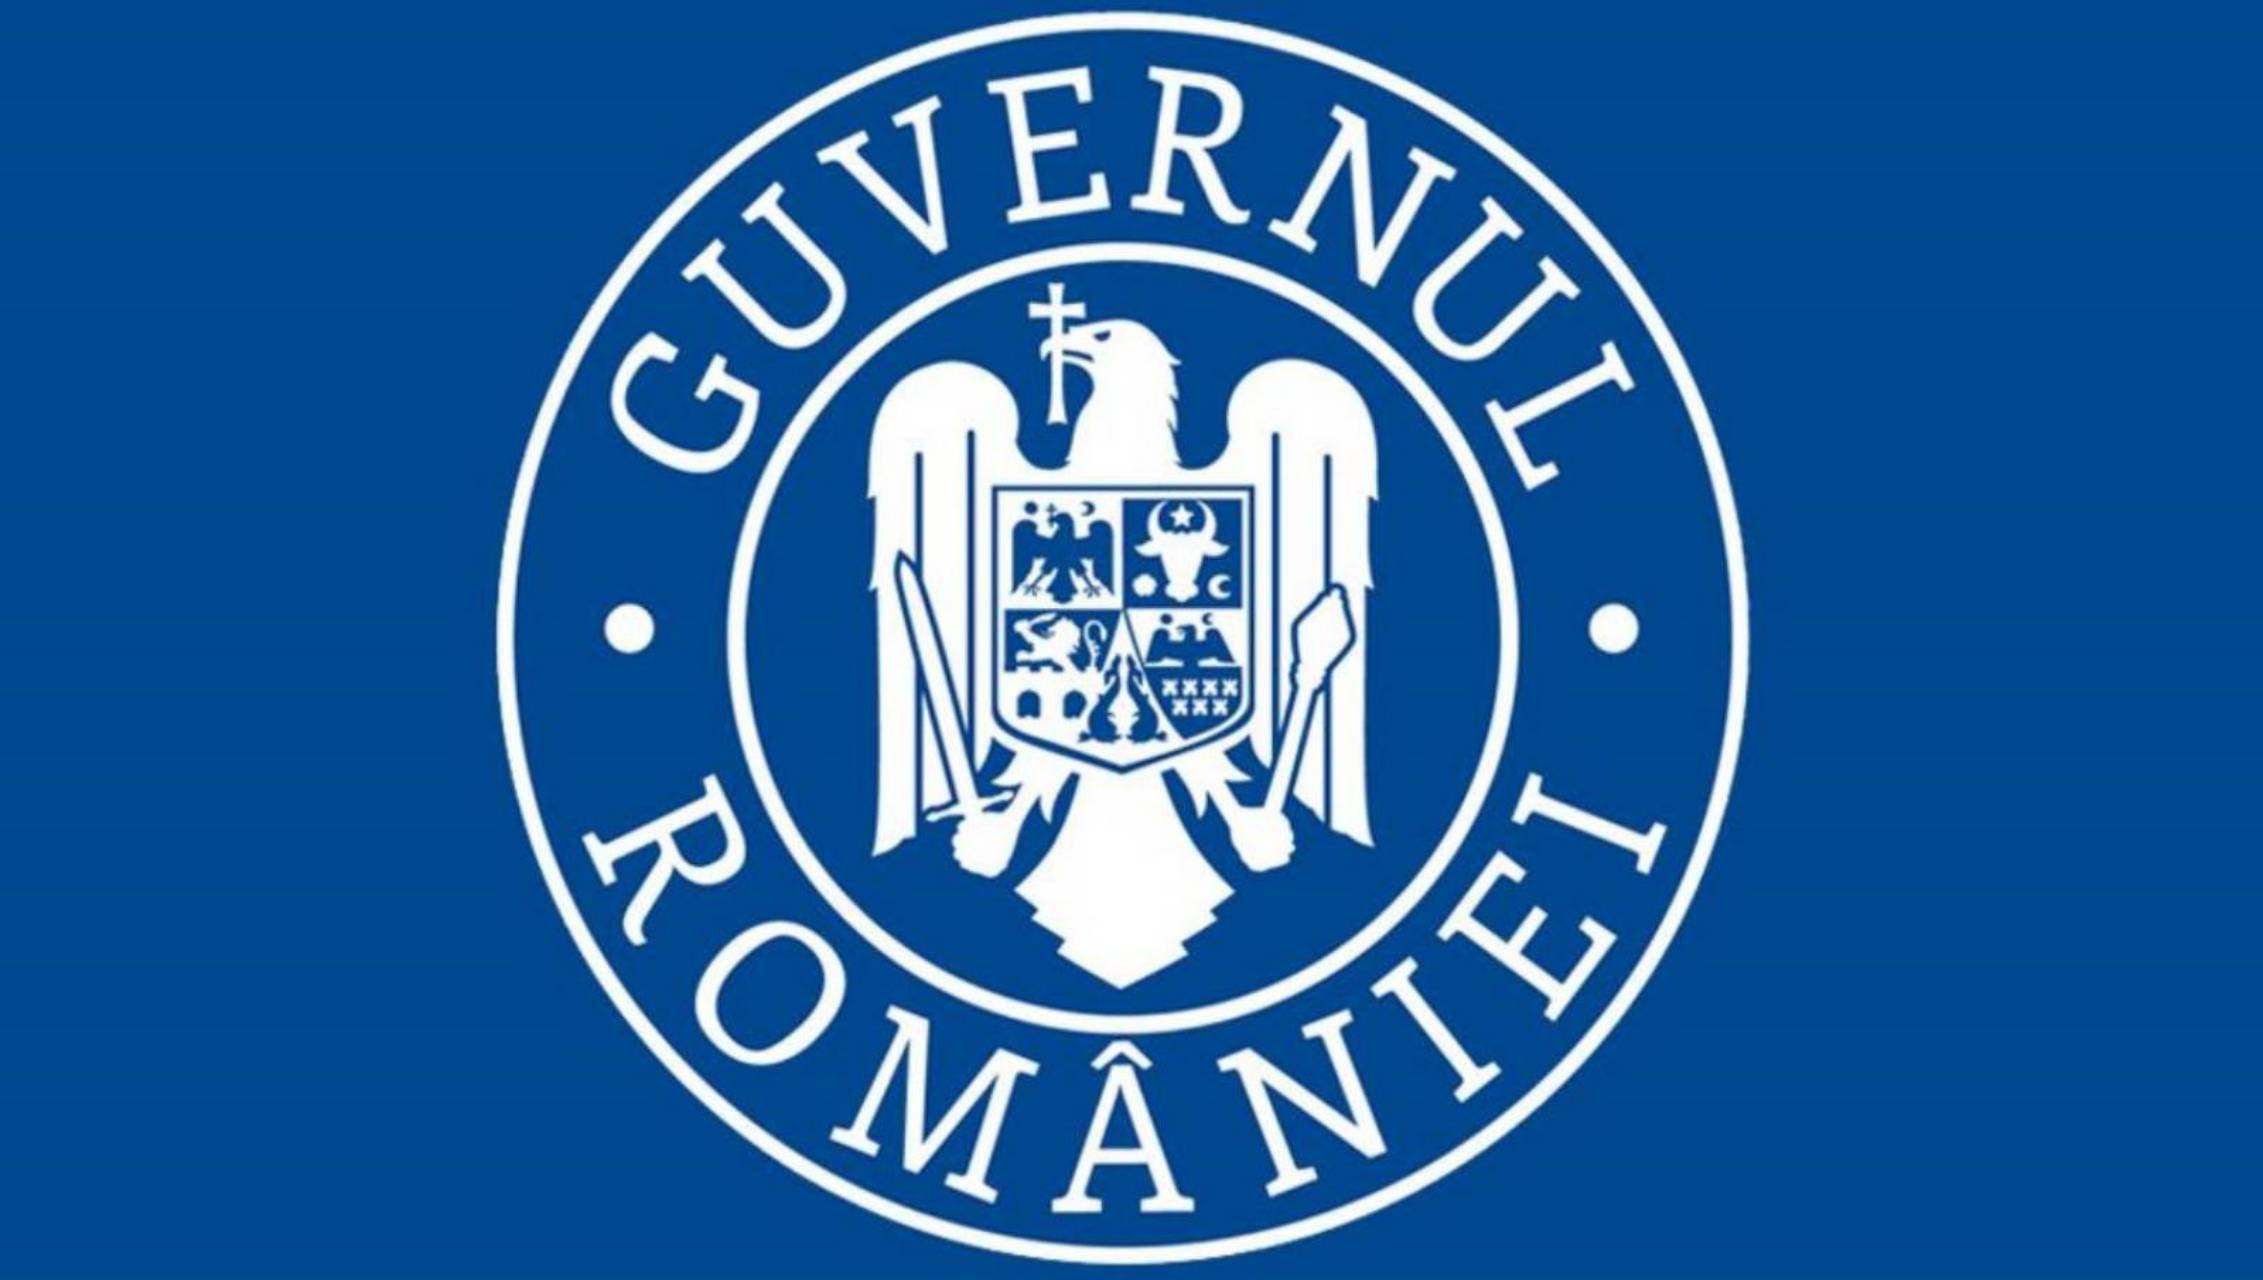 Rood scenario van de Roemeense regering Boekarest